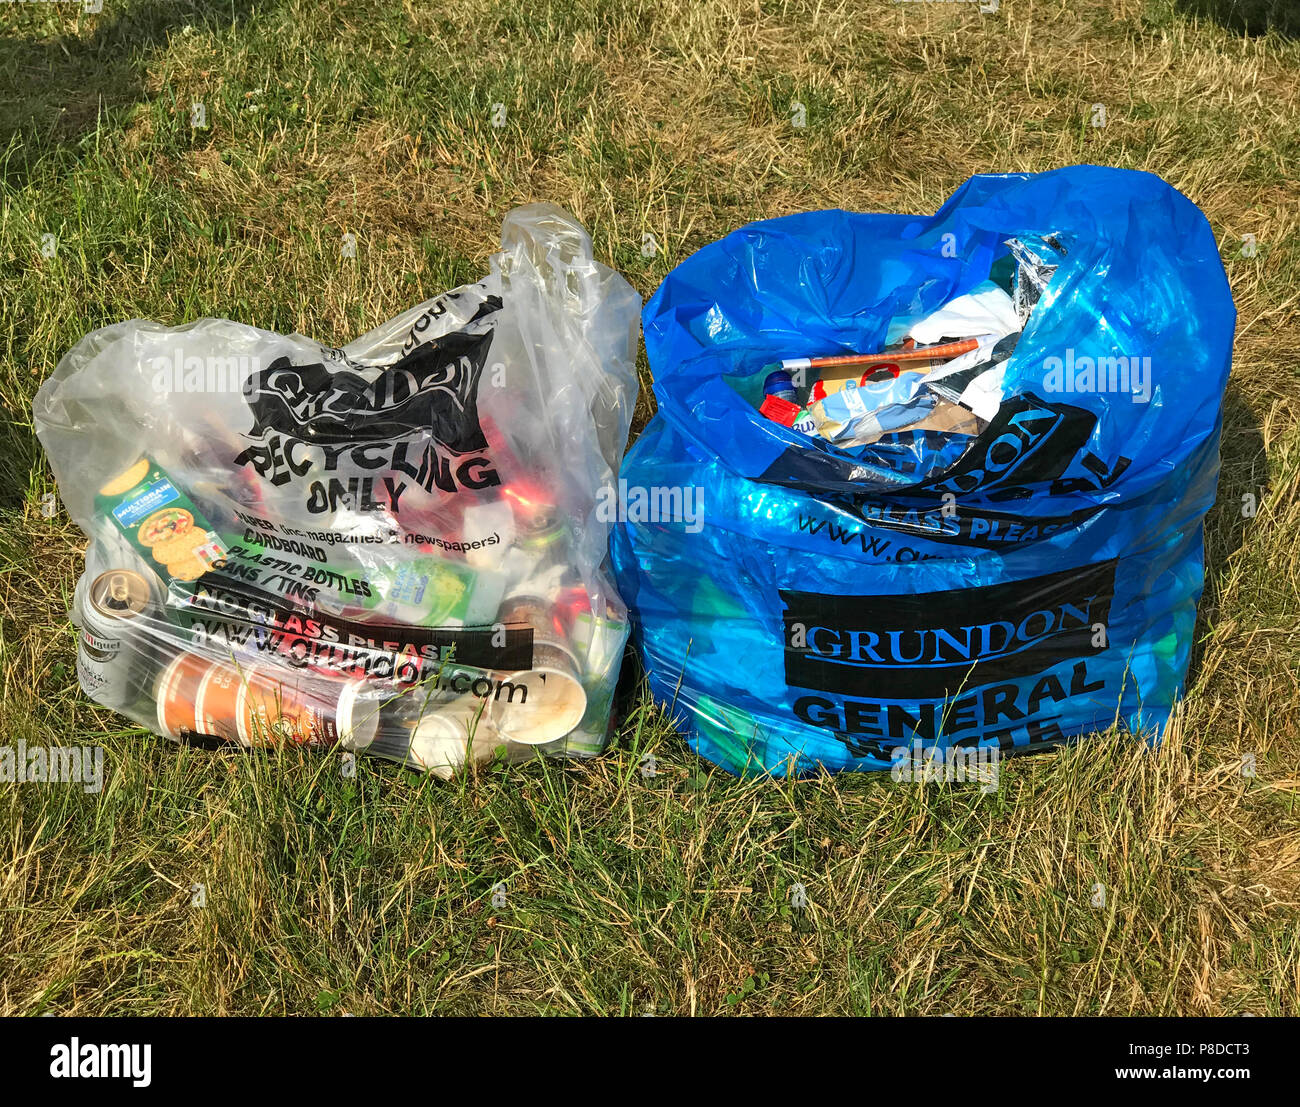 Camping deux sacs, les déchets et le recyclage en général, sur le terrain de camping Sac, Sac bleu clair, Grundon , Recyclage seulement Banque D'Images